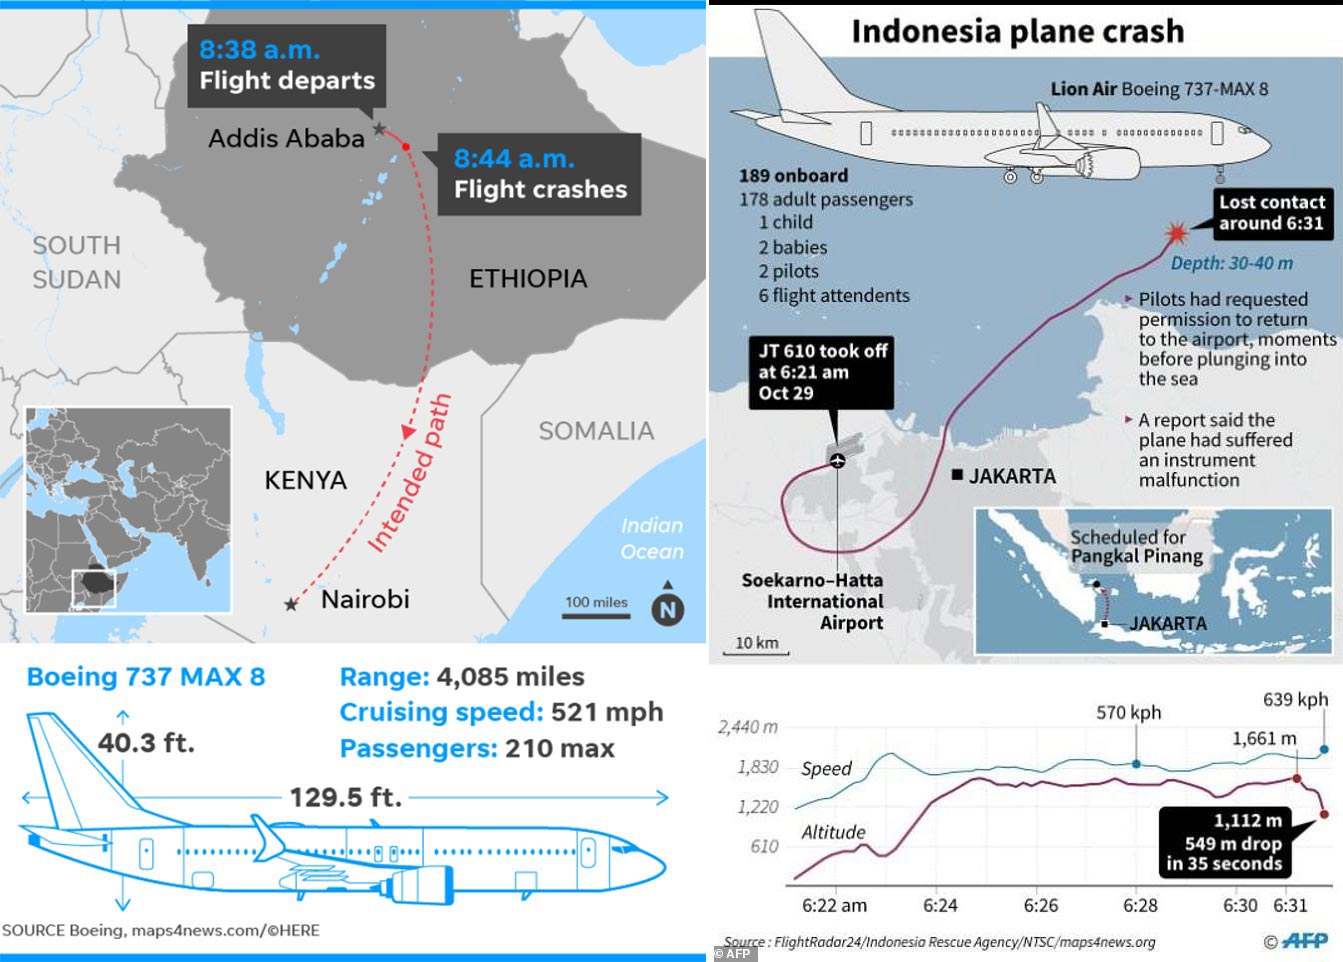 左图为2019年3月10日埃航ET302航班空难示意图；右图为2018年10月29日印尼狮航JT610航班航班空难示意。（拖拽保存图片可查看大图）